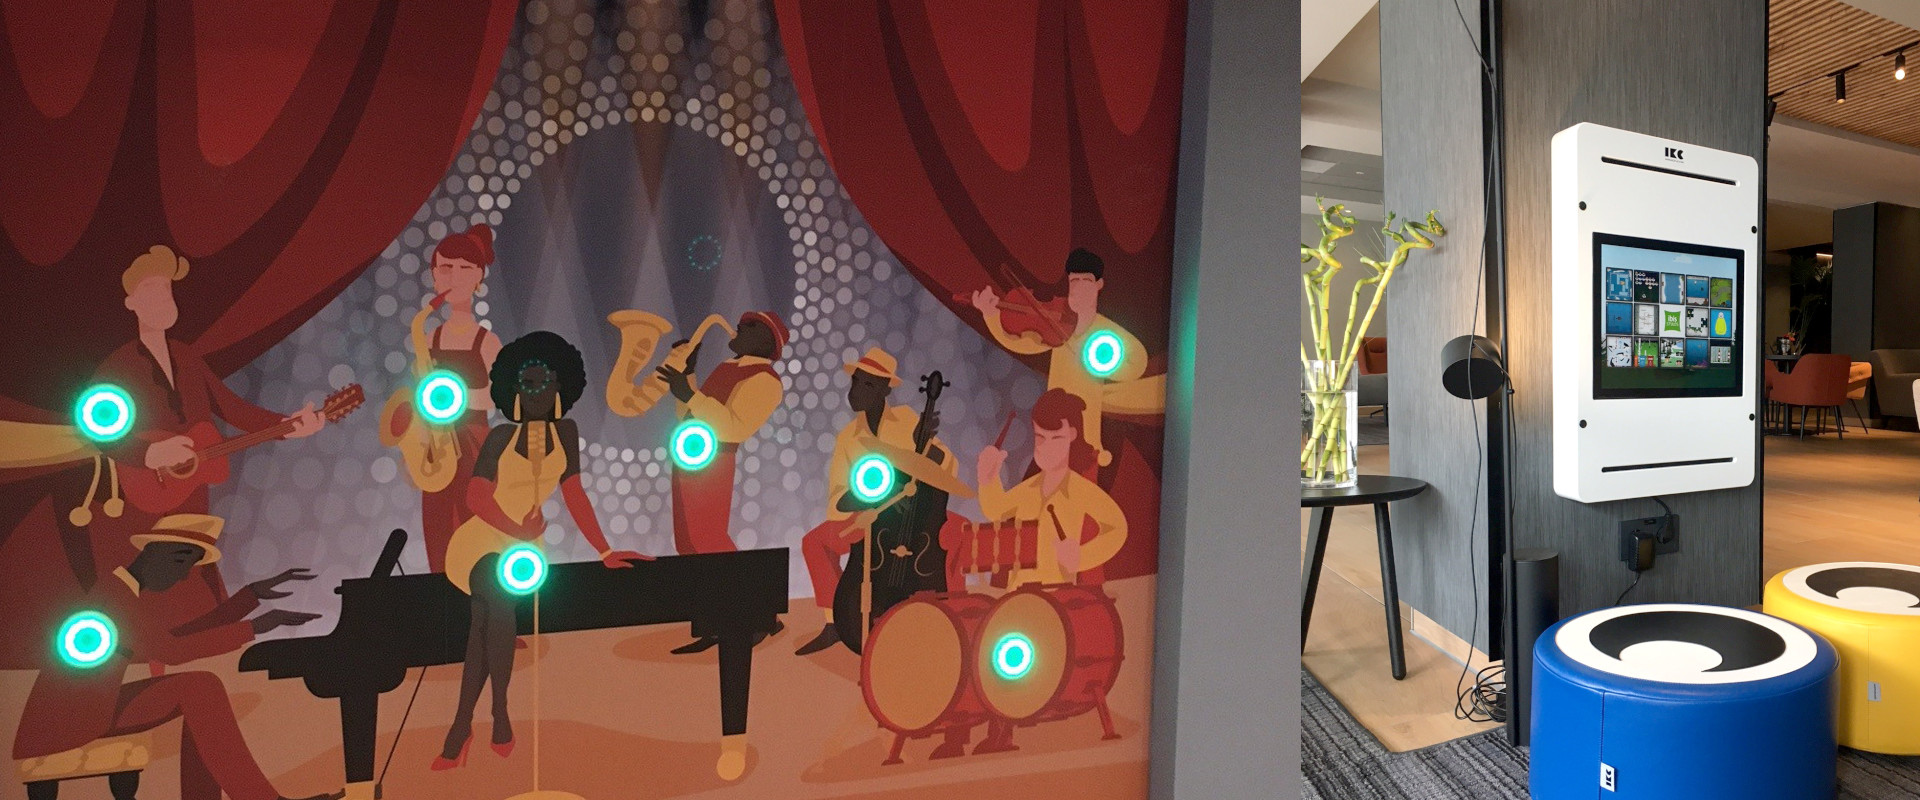 Ibis hotel kinderhoek met interactieve wand en spelcomputer